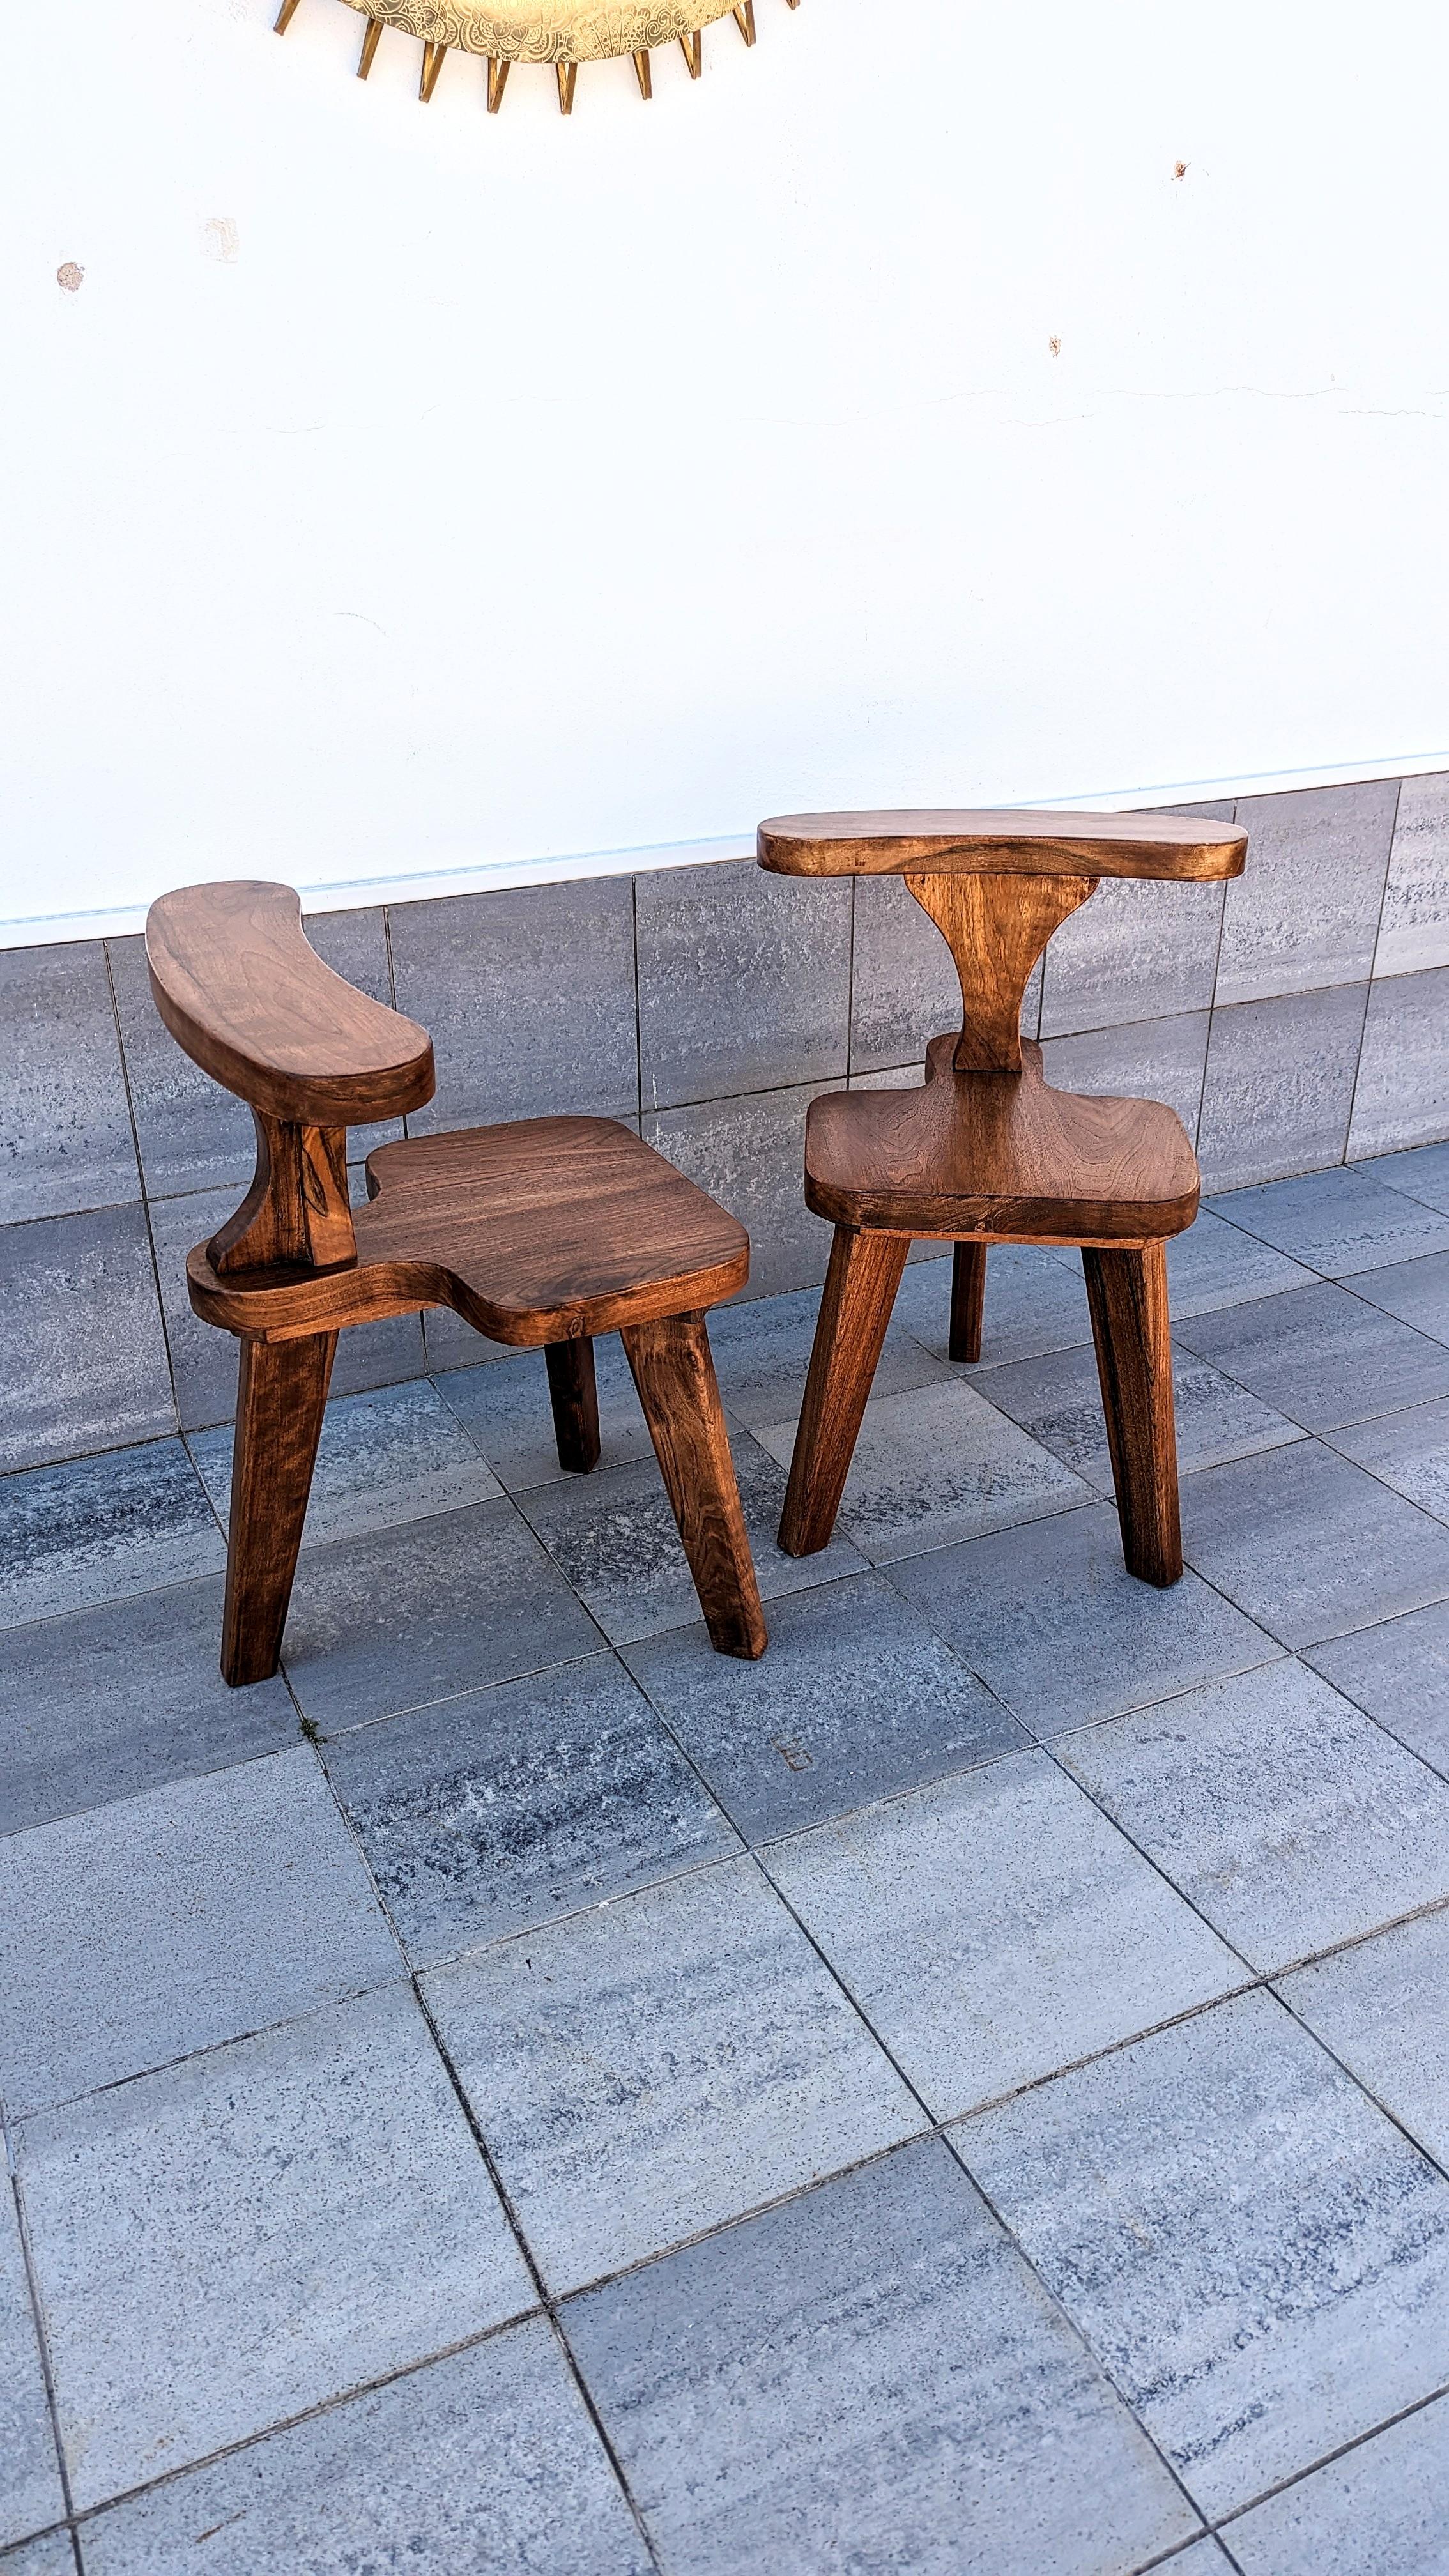 Dieser brutalistische Raucherstuhl aus Eiche stammt aus den 1960er Jahren. Sehr stabil. Das Design ist dem antiken Hahnenkampfstuhl nachempfunden. Wir haben sechs Stück auf Lager. Jeder Stuhl ist in einwandfreiem Zustand, mit den originalen Labels.